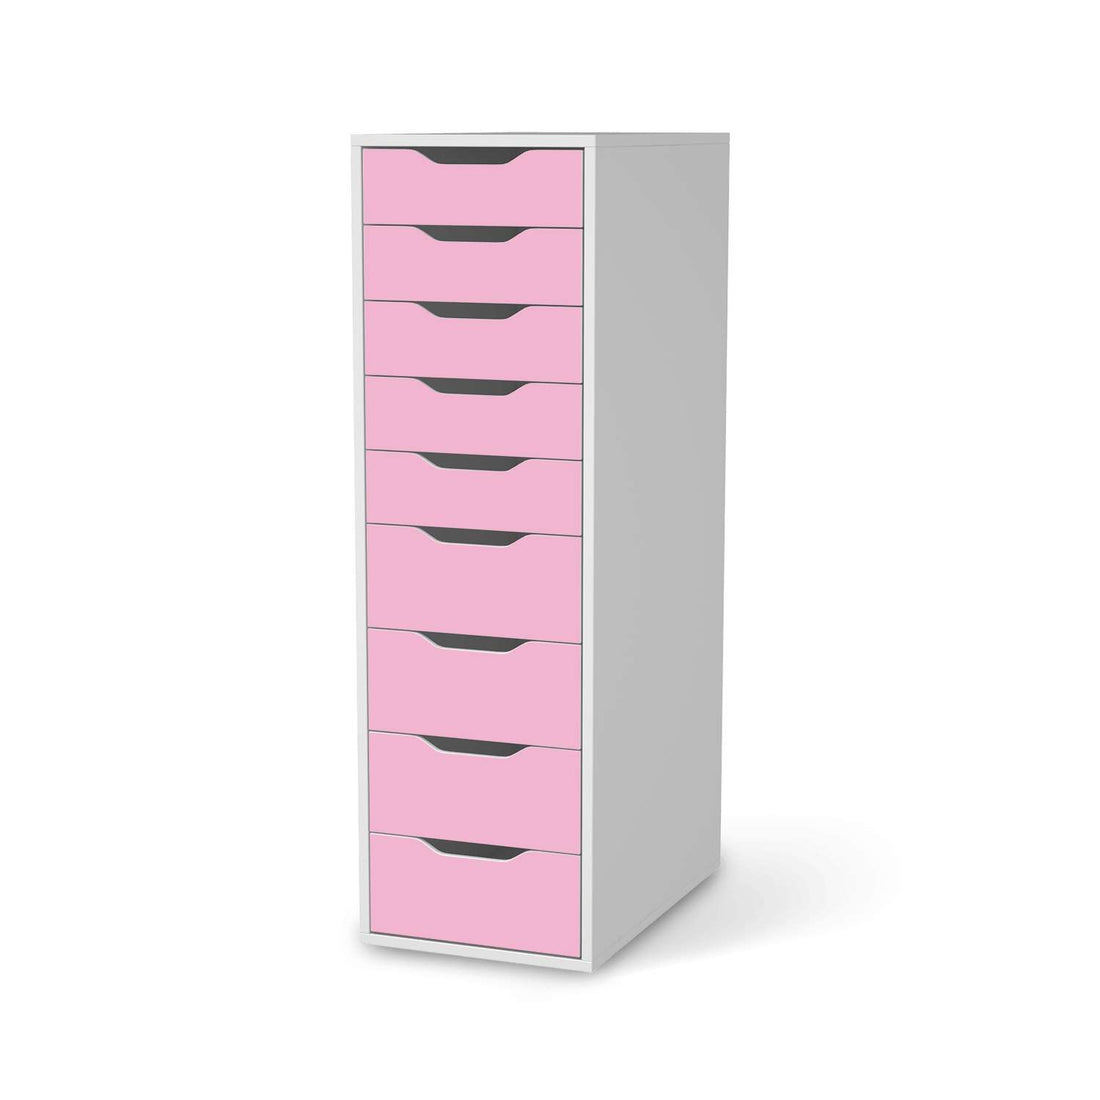 Folie für Möbel Pink Light - IKEA Alex 9 Schubladen - weiss